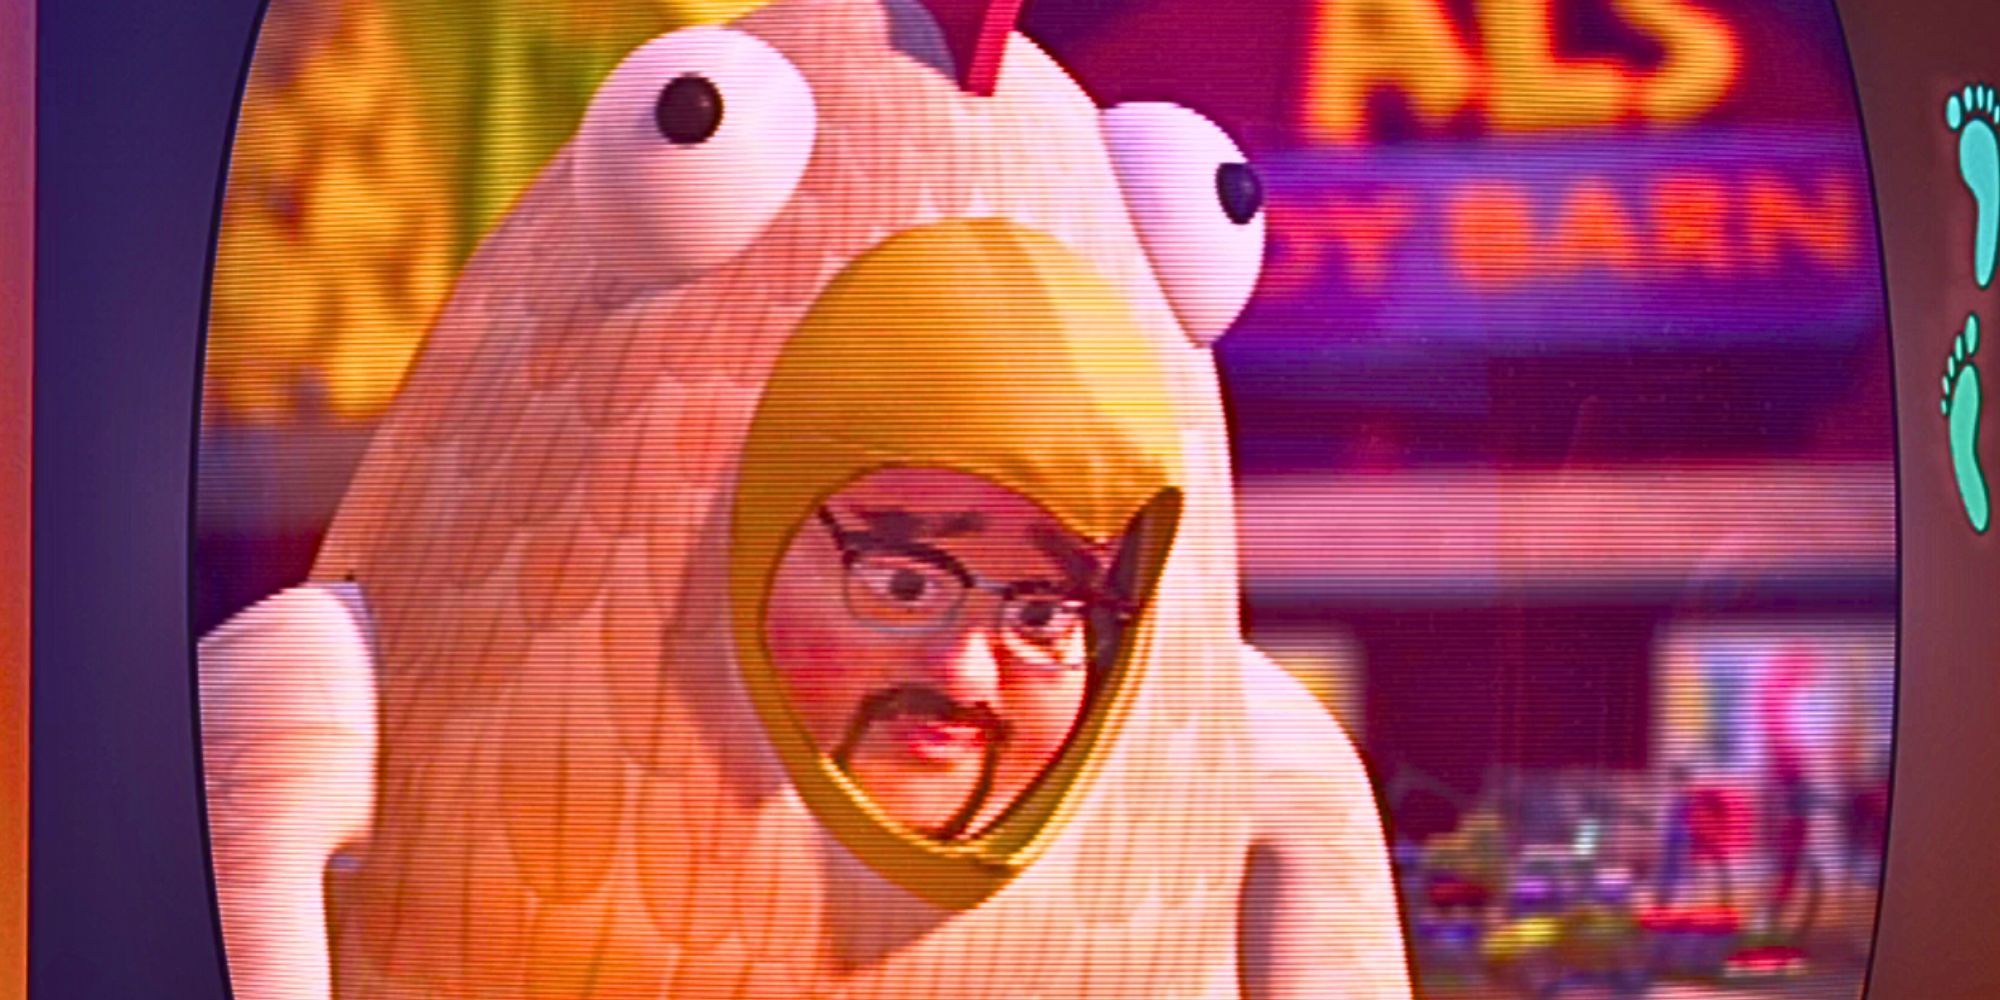 Al przebrany za kurczaka i wyglądający na smutnego w Toy Story 2